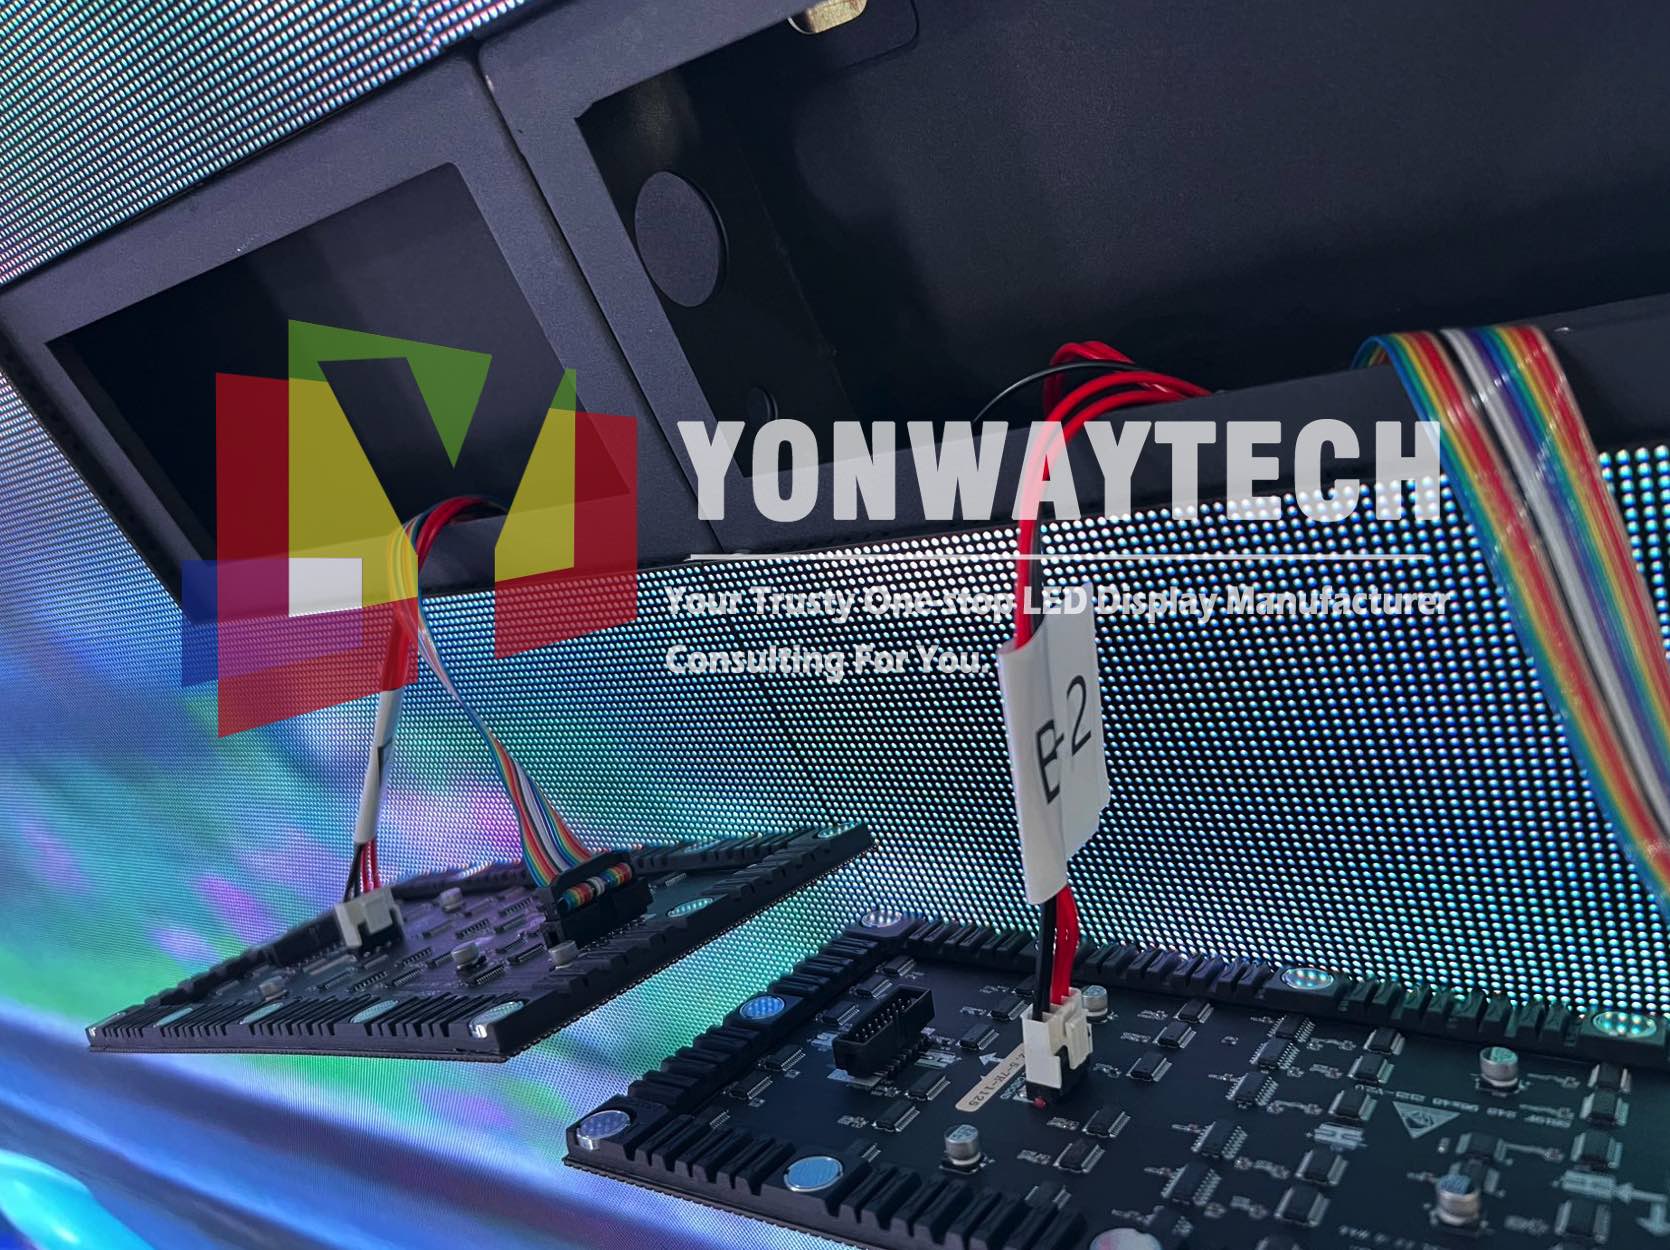 Өндөр сэргэлттэй зөөлөн LED модулийн дэлгэц Yonwaytech LED